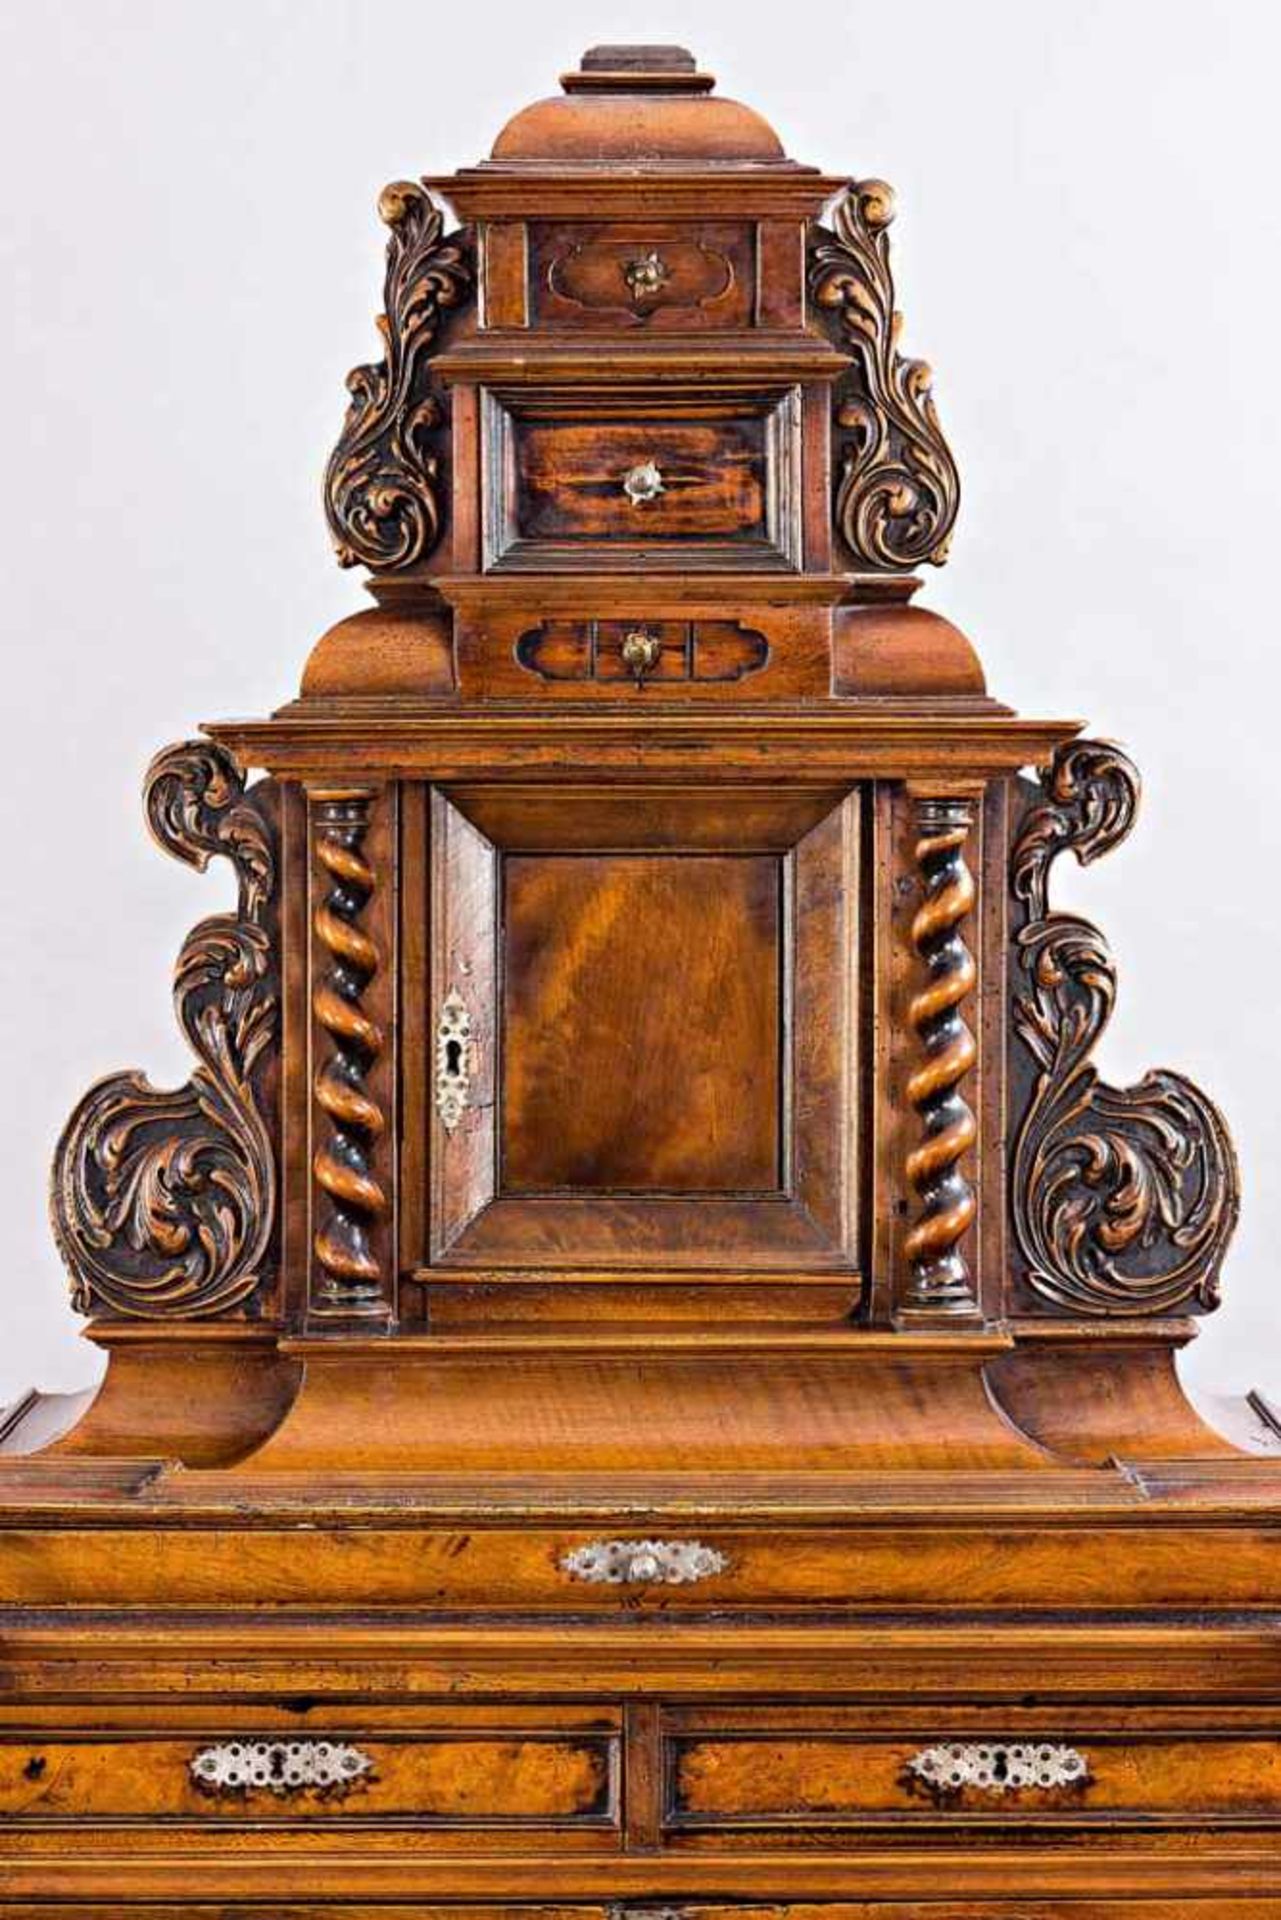 Kabinettschrank im Renaissance-Stil. Architektonisch gegliederter Korpus. Risalitartig vorspringende - Bild 3 aus 3